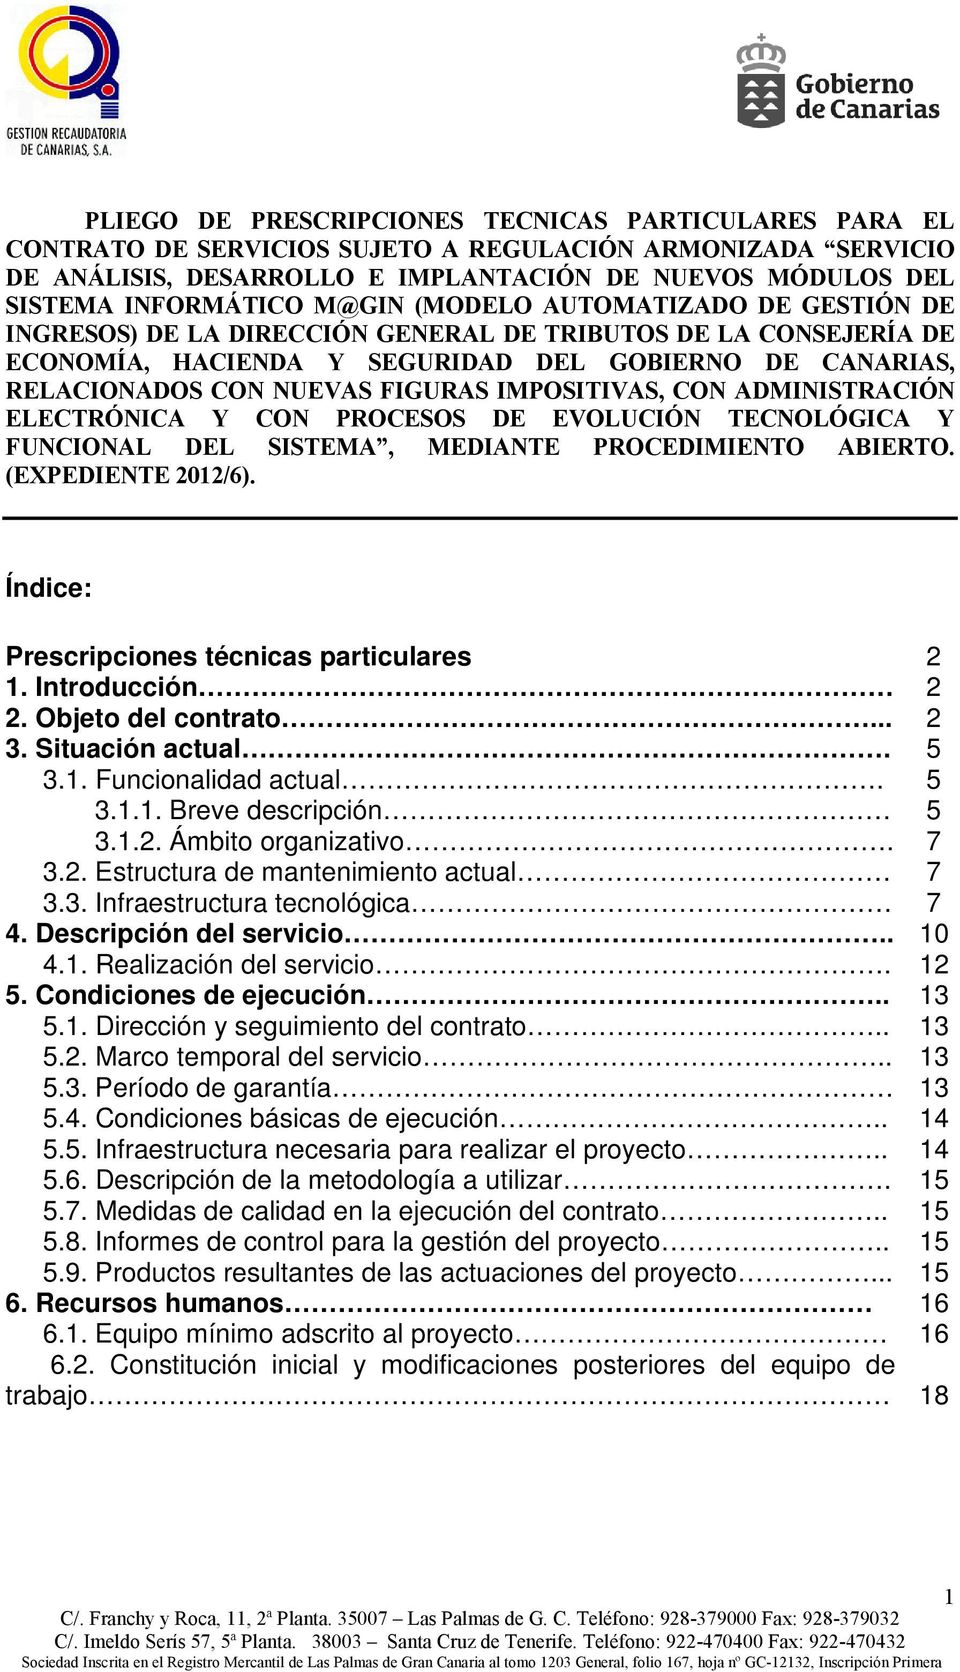 IMPOSITIVAS, CON ADMINISTRACIÓN ELECTRÓNICA Y CON PROCESOS DE EVOLUCIÓN TECNOLÓGICA Y FUNCIONAL DEL SISTEMA, MEDIANTE PROCEDIMIENTO ABIERTO. (EXPEDIENTE 2012/6).